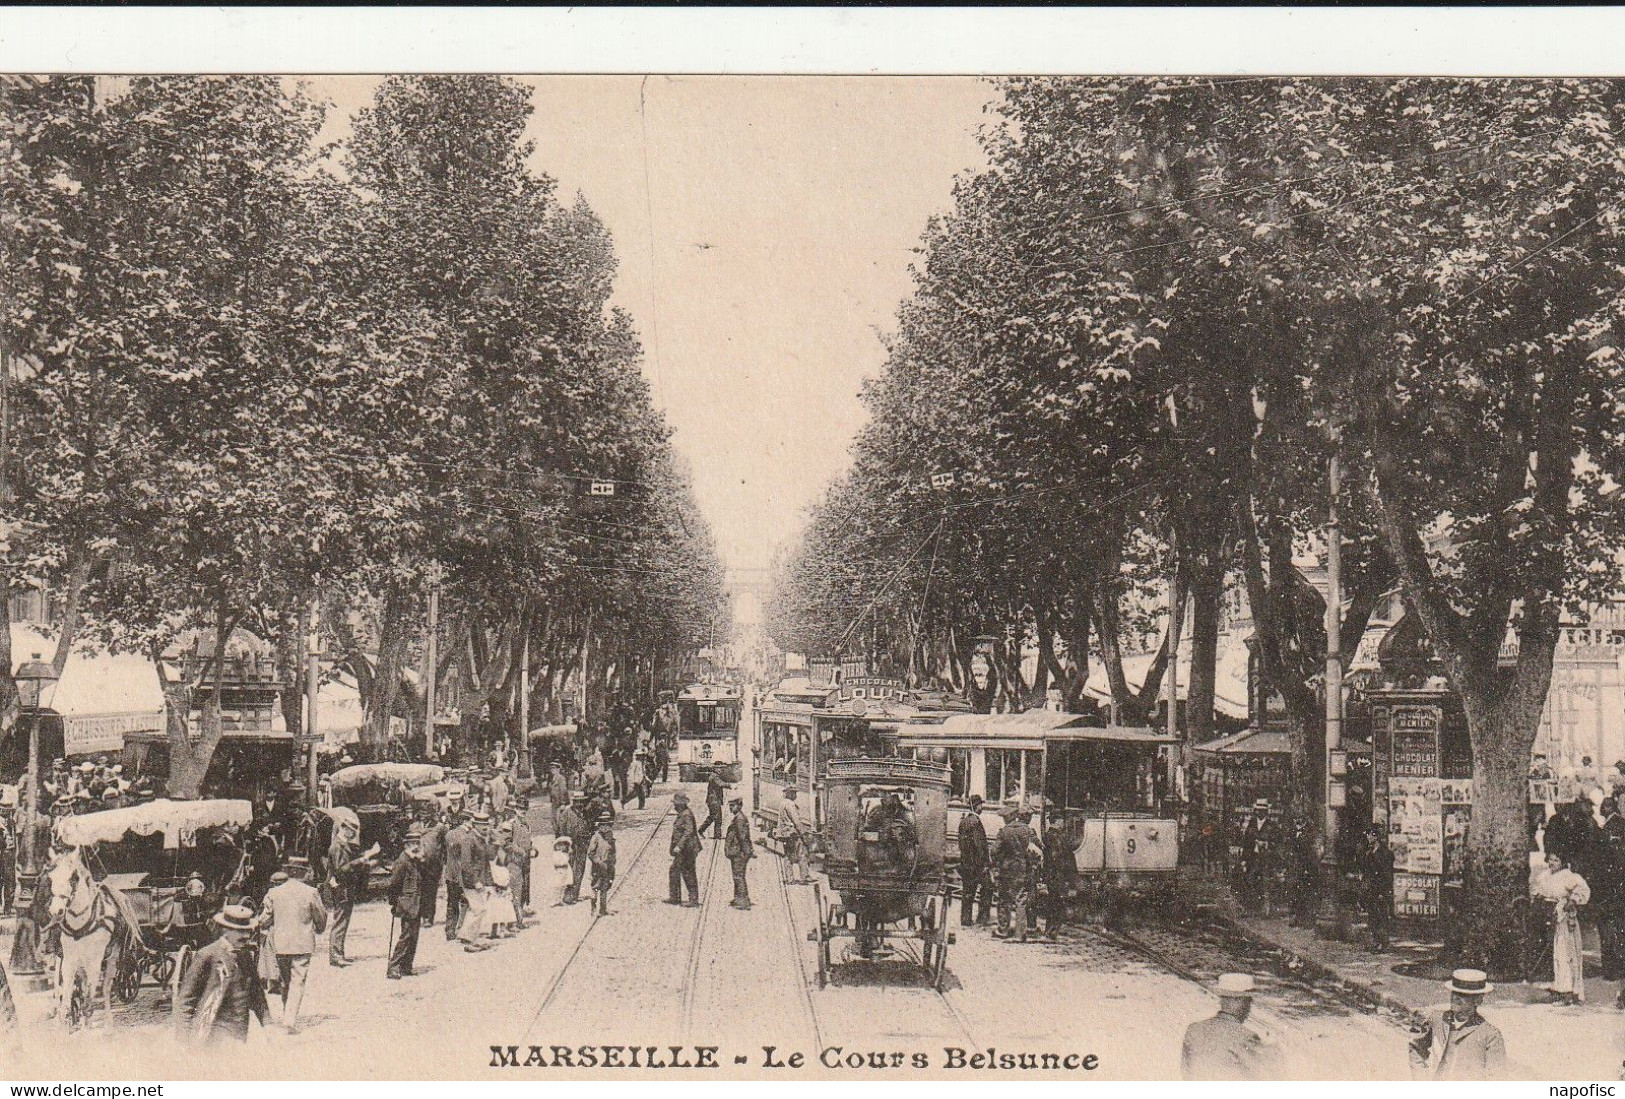 13-Marseille Le Cours Belsunce - Canebière, Centro Città